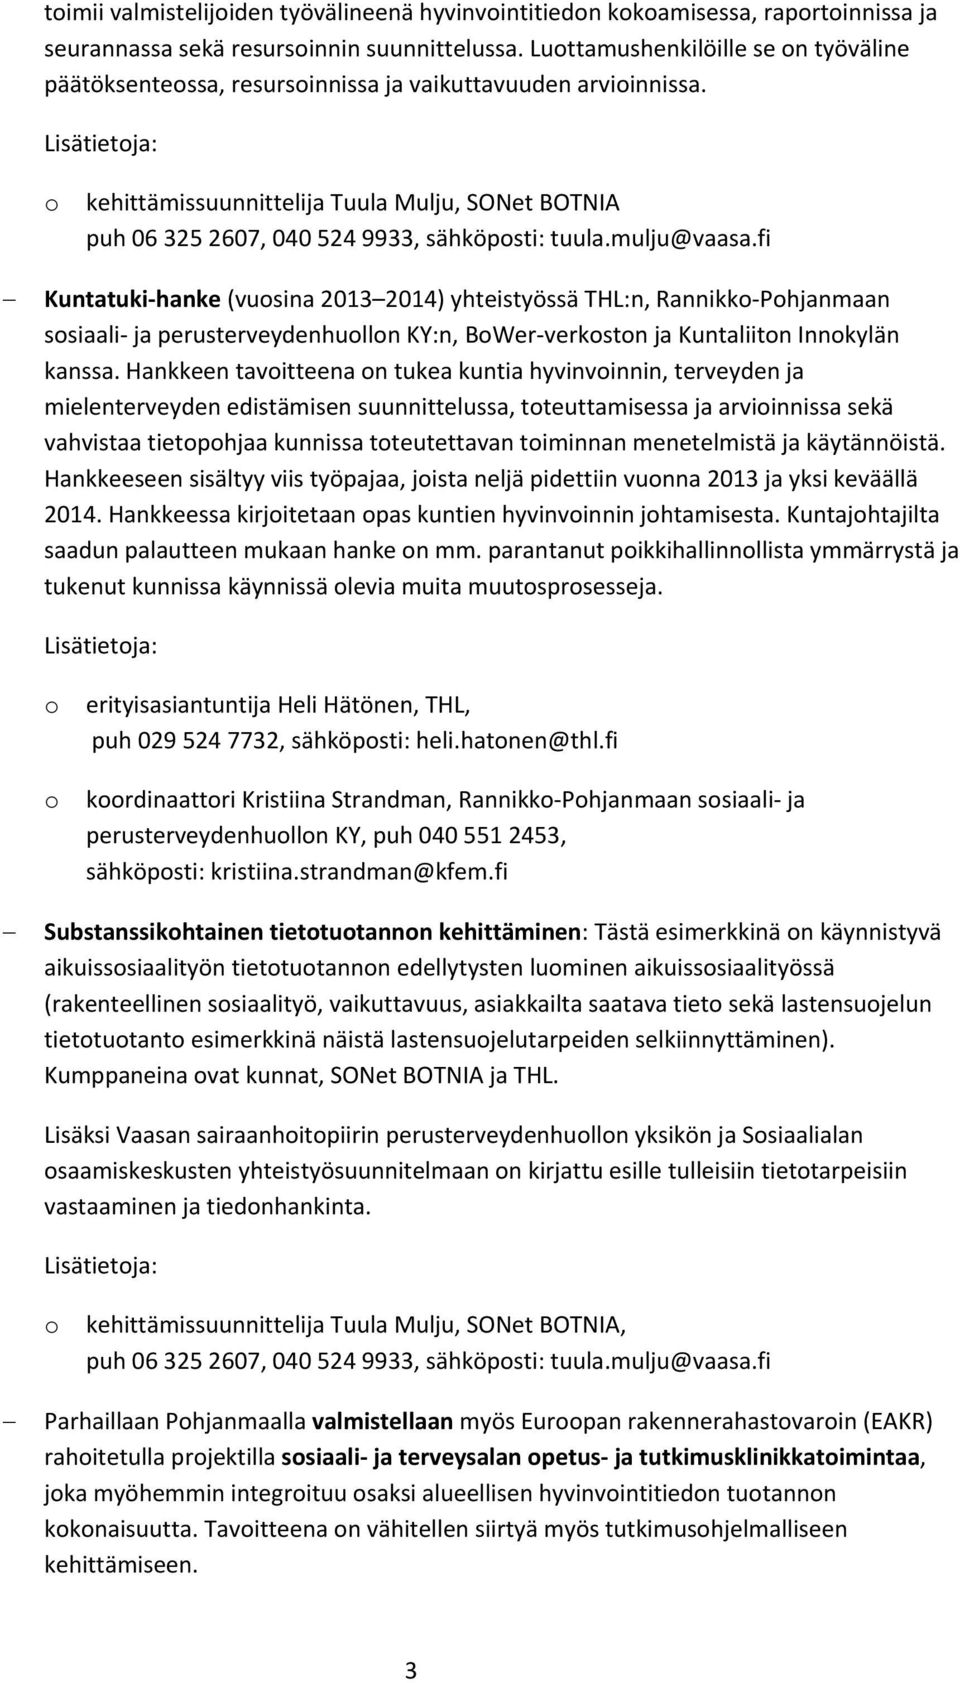 fi Kuntatuki hanke (vusina 2013 2014) yhteistyössä THL:n, Rannikk Phjanmaan ssiaali ja perusterveydenhulln KY:n, BWer verkstn ja Kuntaliitn Innkylän kanssa.